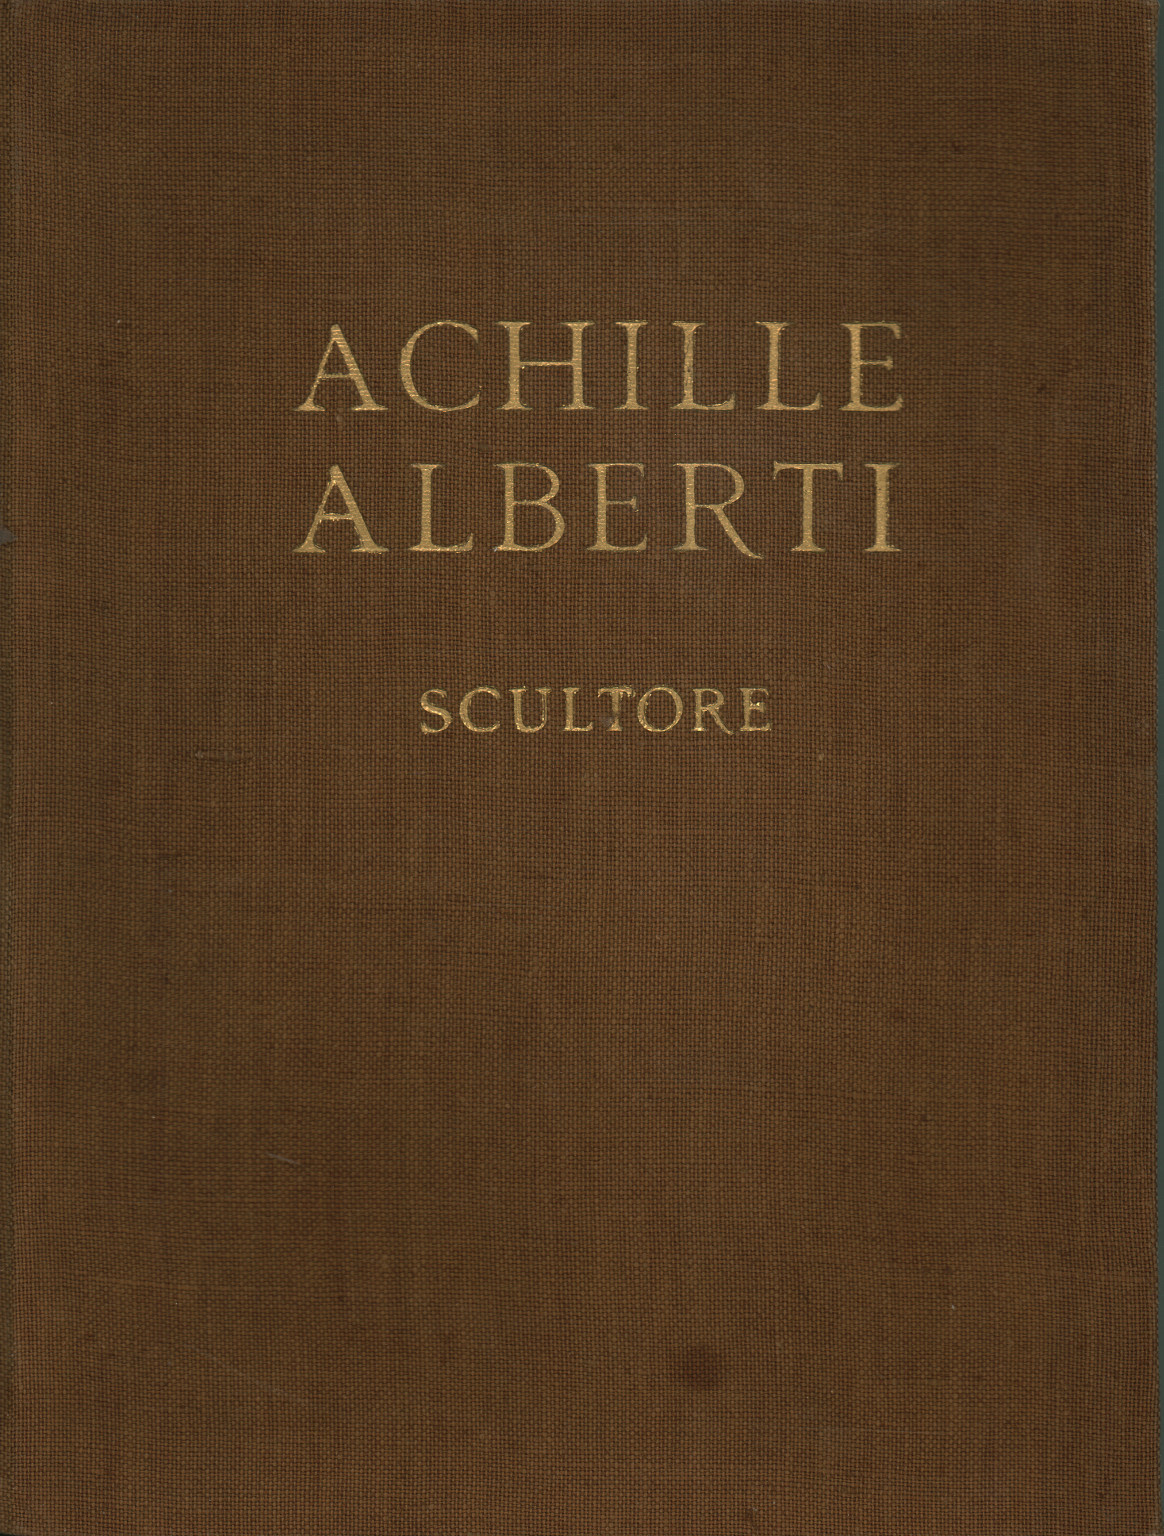 Achille Alberti escultor, s.a.